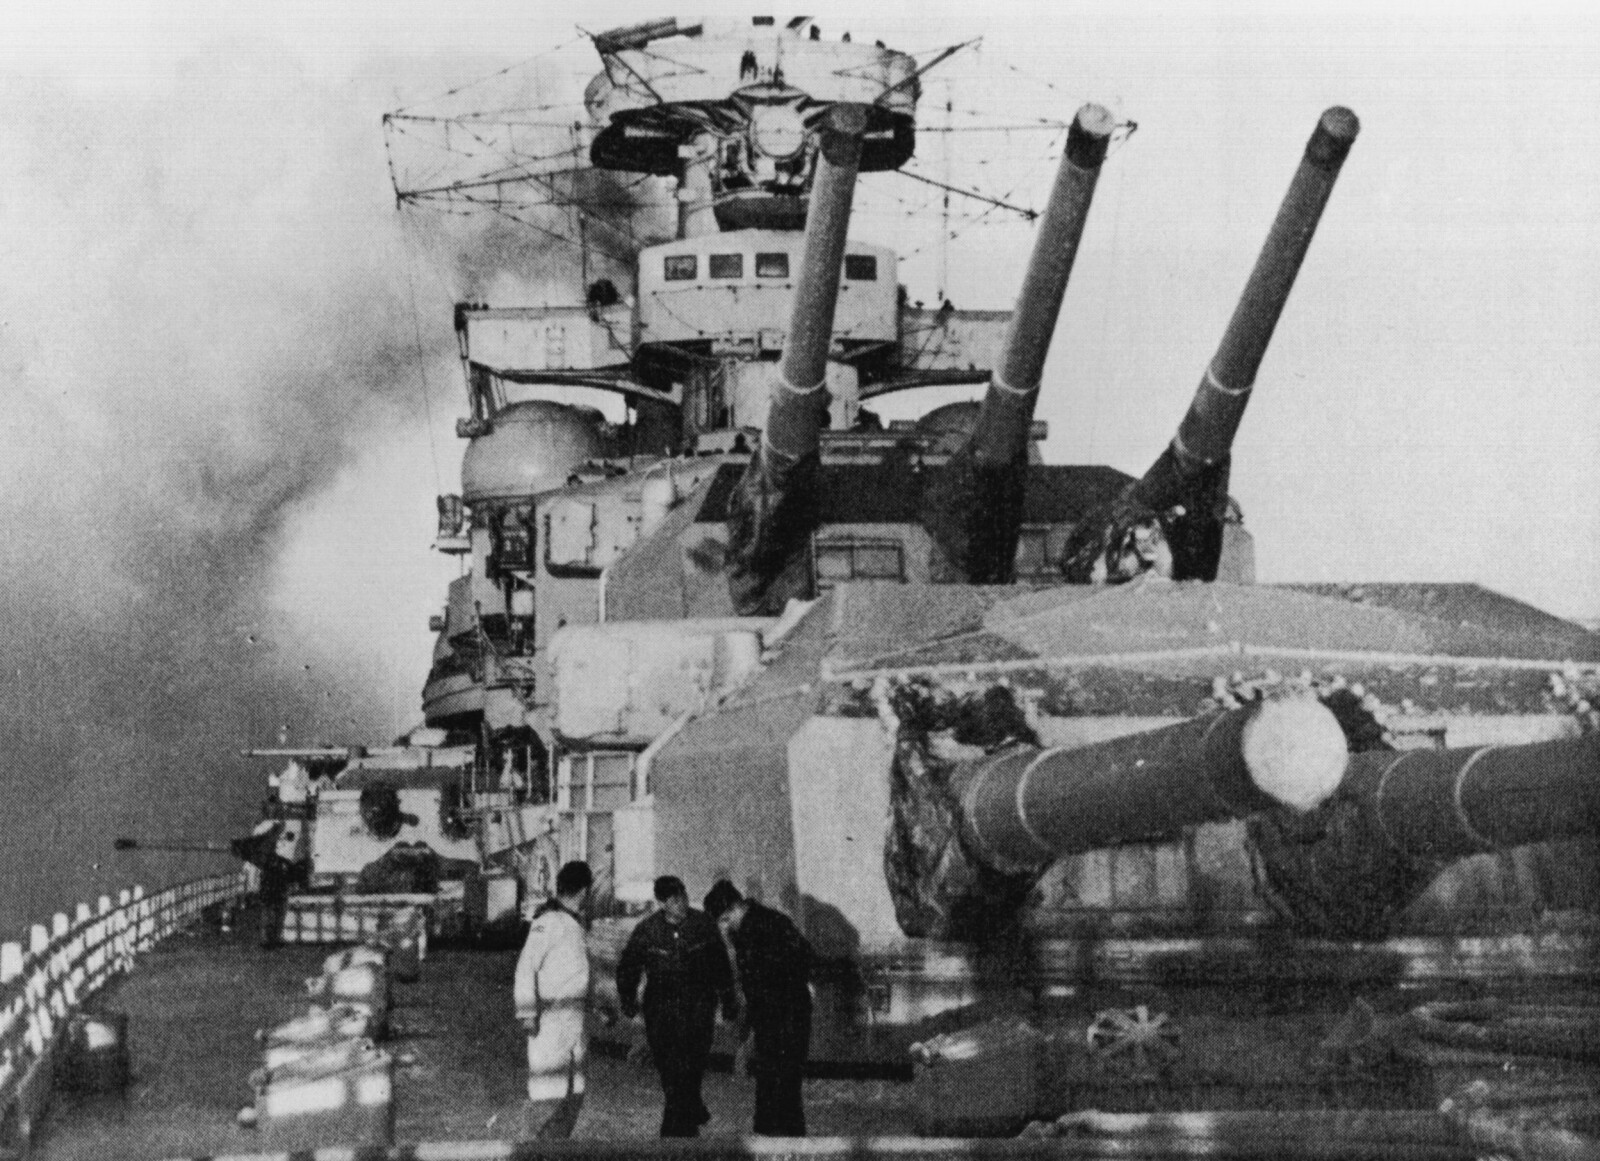 <b>FUNNET I ÅR 2000:</b> Ingen så slagkrysseren «Scharnhorst» synke 2. juledag 1943. Først høsten år 2000 ble vraket lokalisert i internasjonalt farvann på Nordkappbanken, 66 nautiske mil nordøst for Nordkapp.